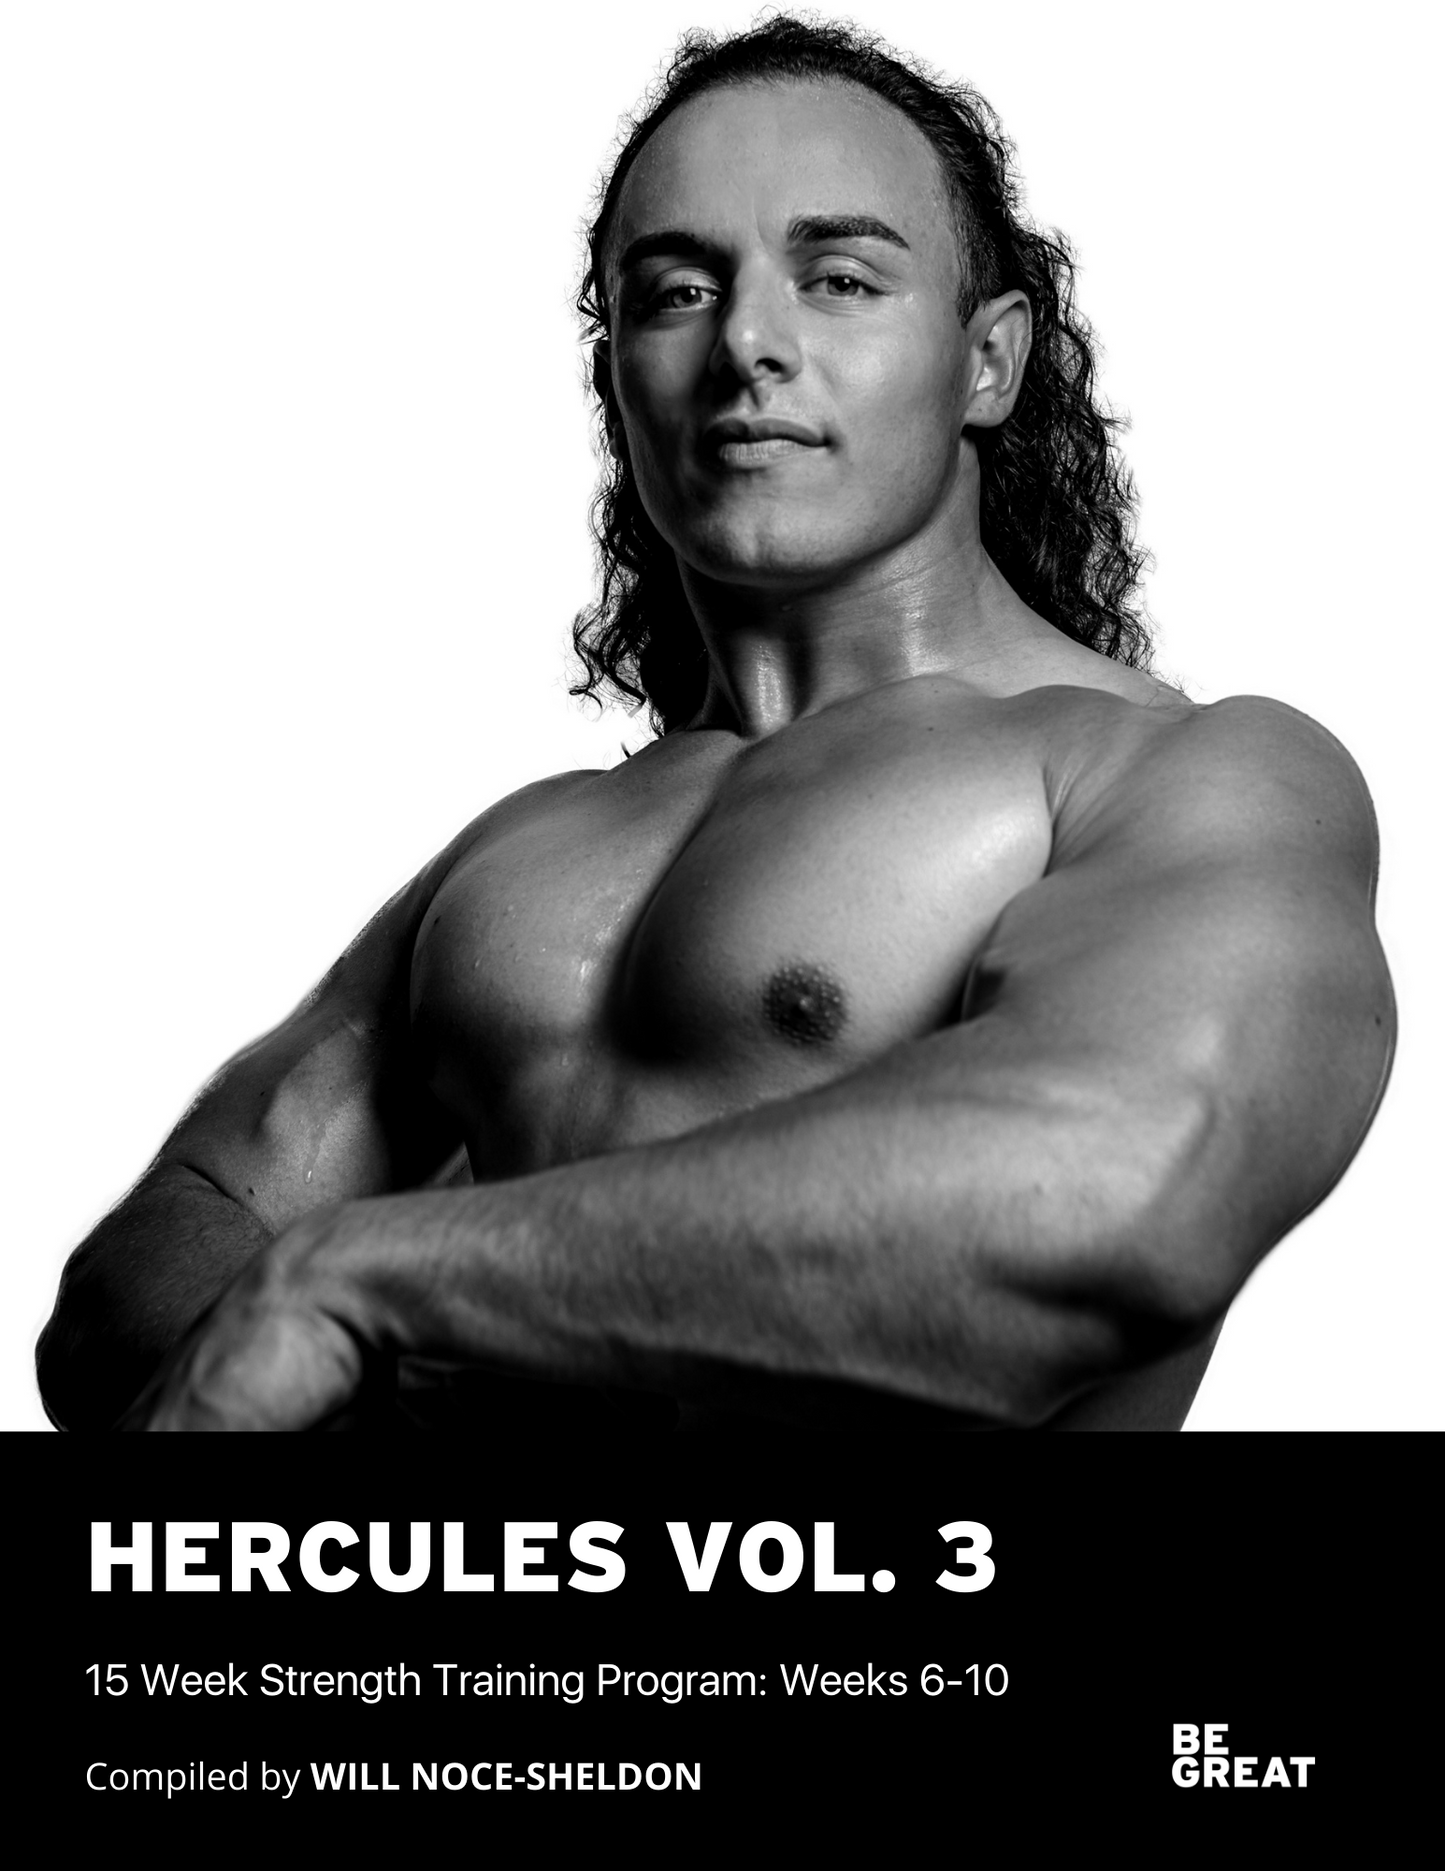 HERCULES Vol. 3 Program